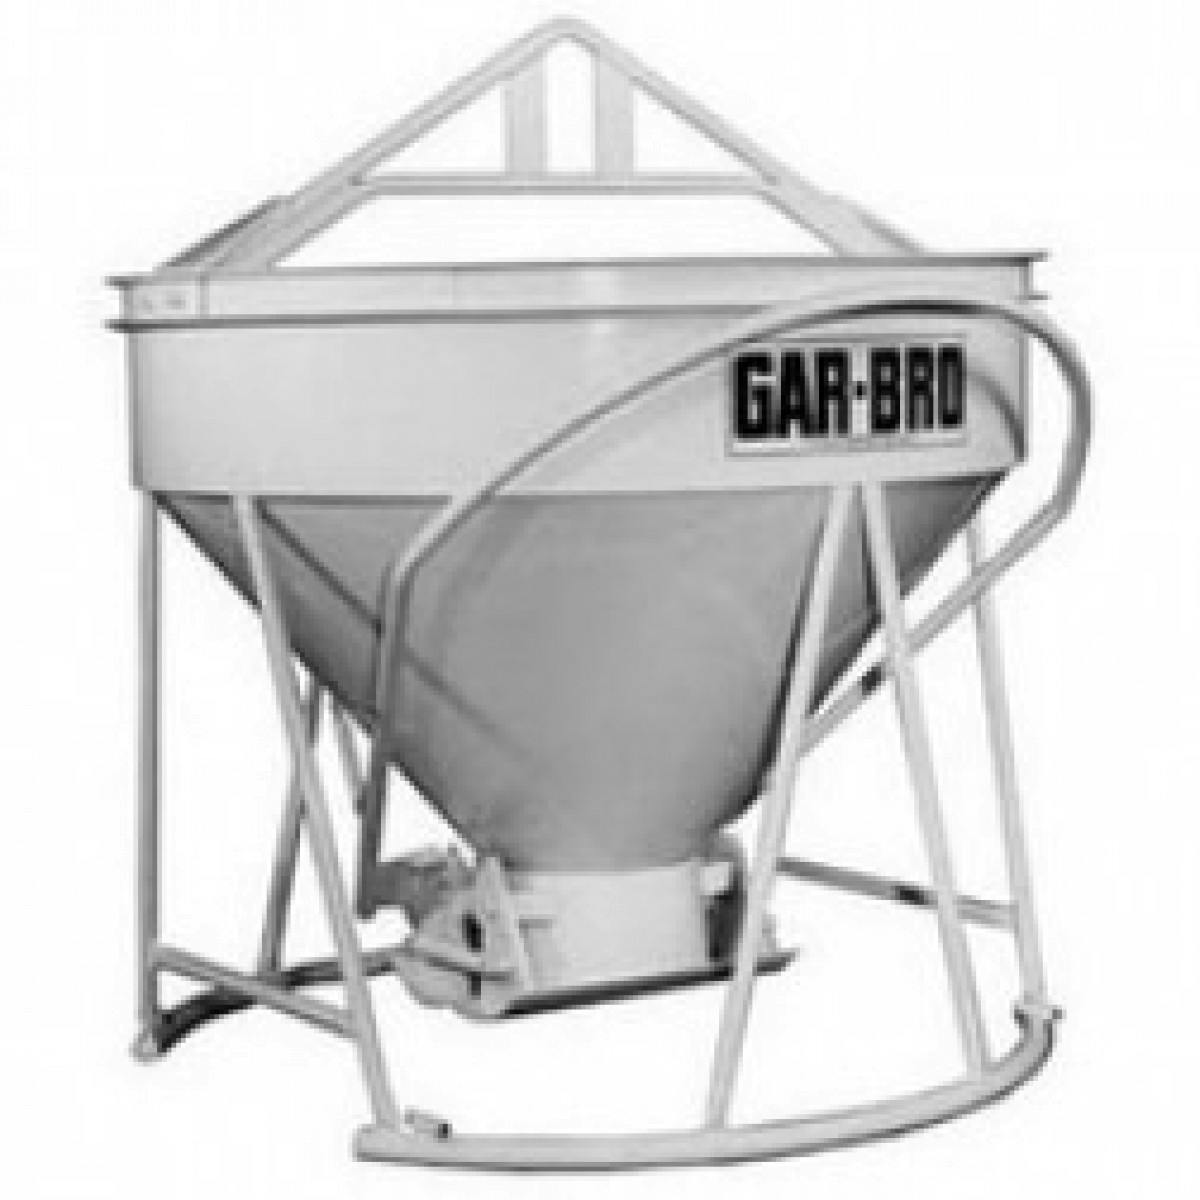 Garbro Concrete Bucket 0